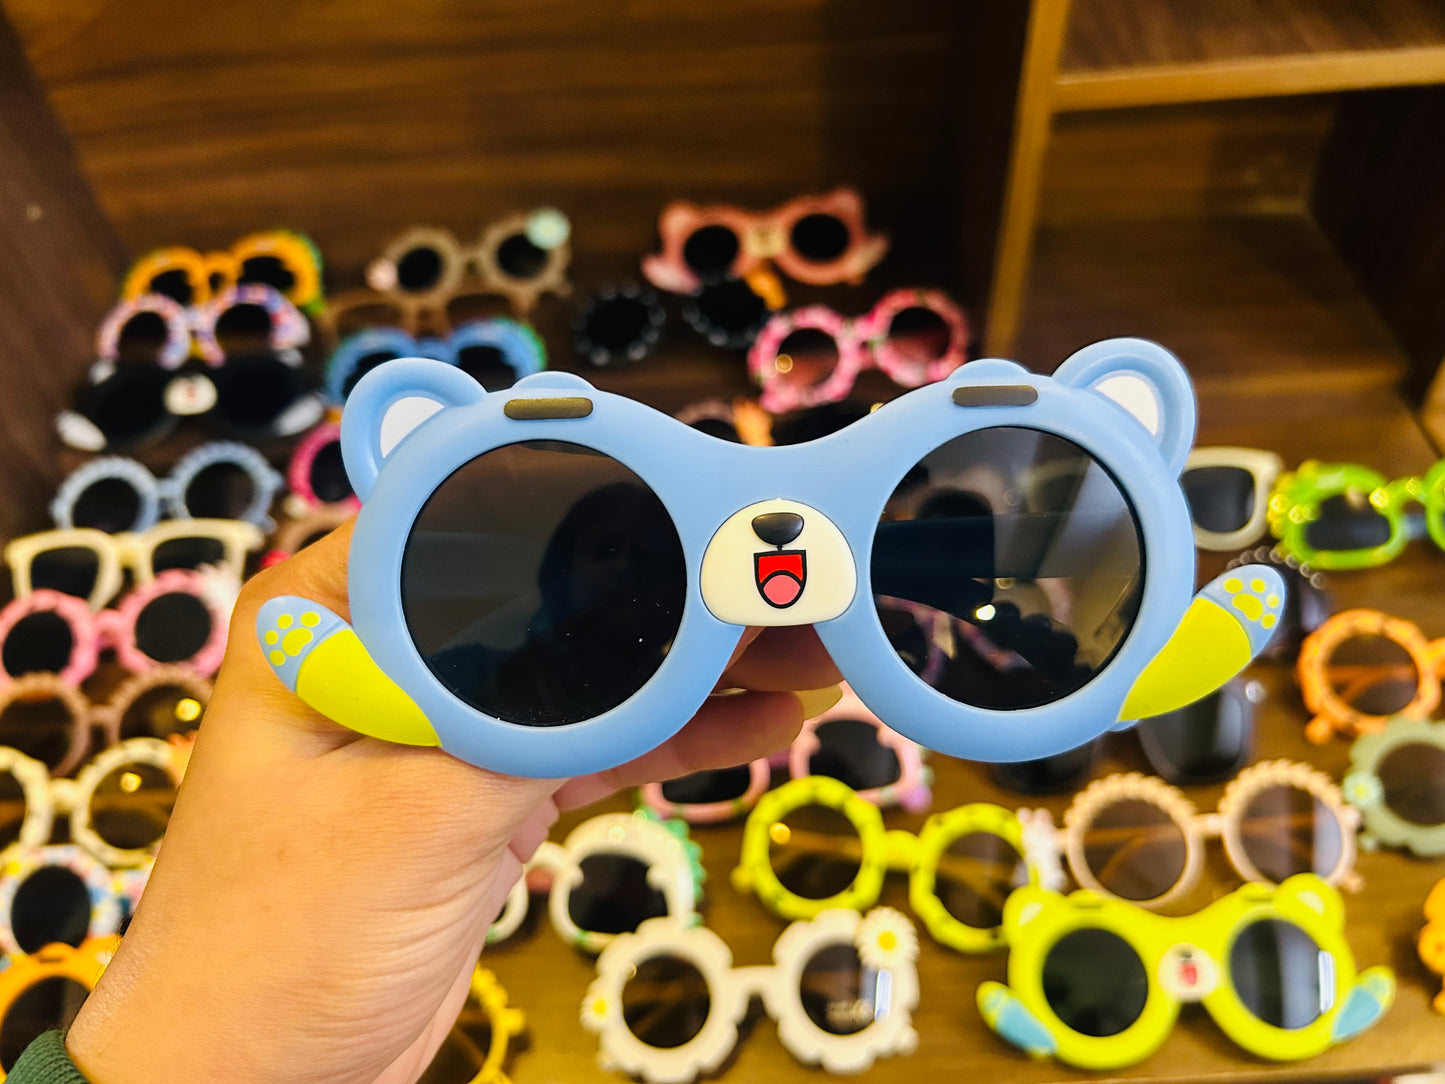 Bear Sunglasses